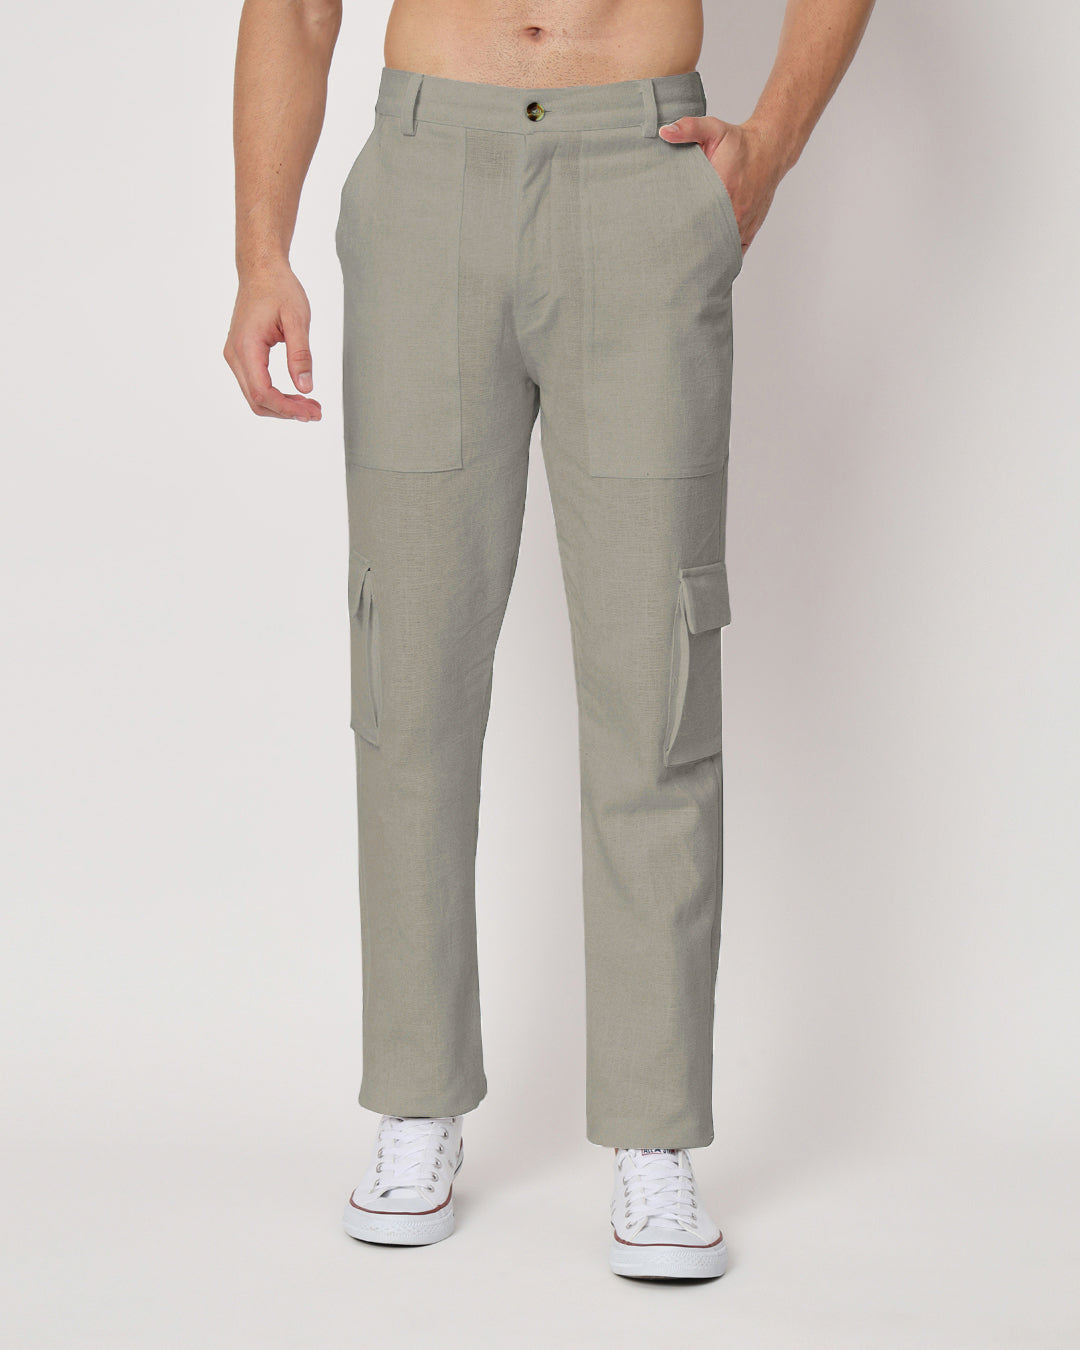 Combo: Function Flex Beige & Grey Men's Pants- Set Of 2